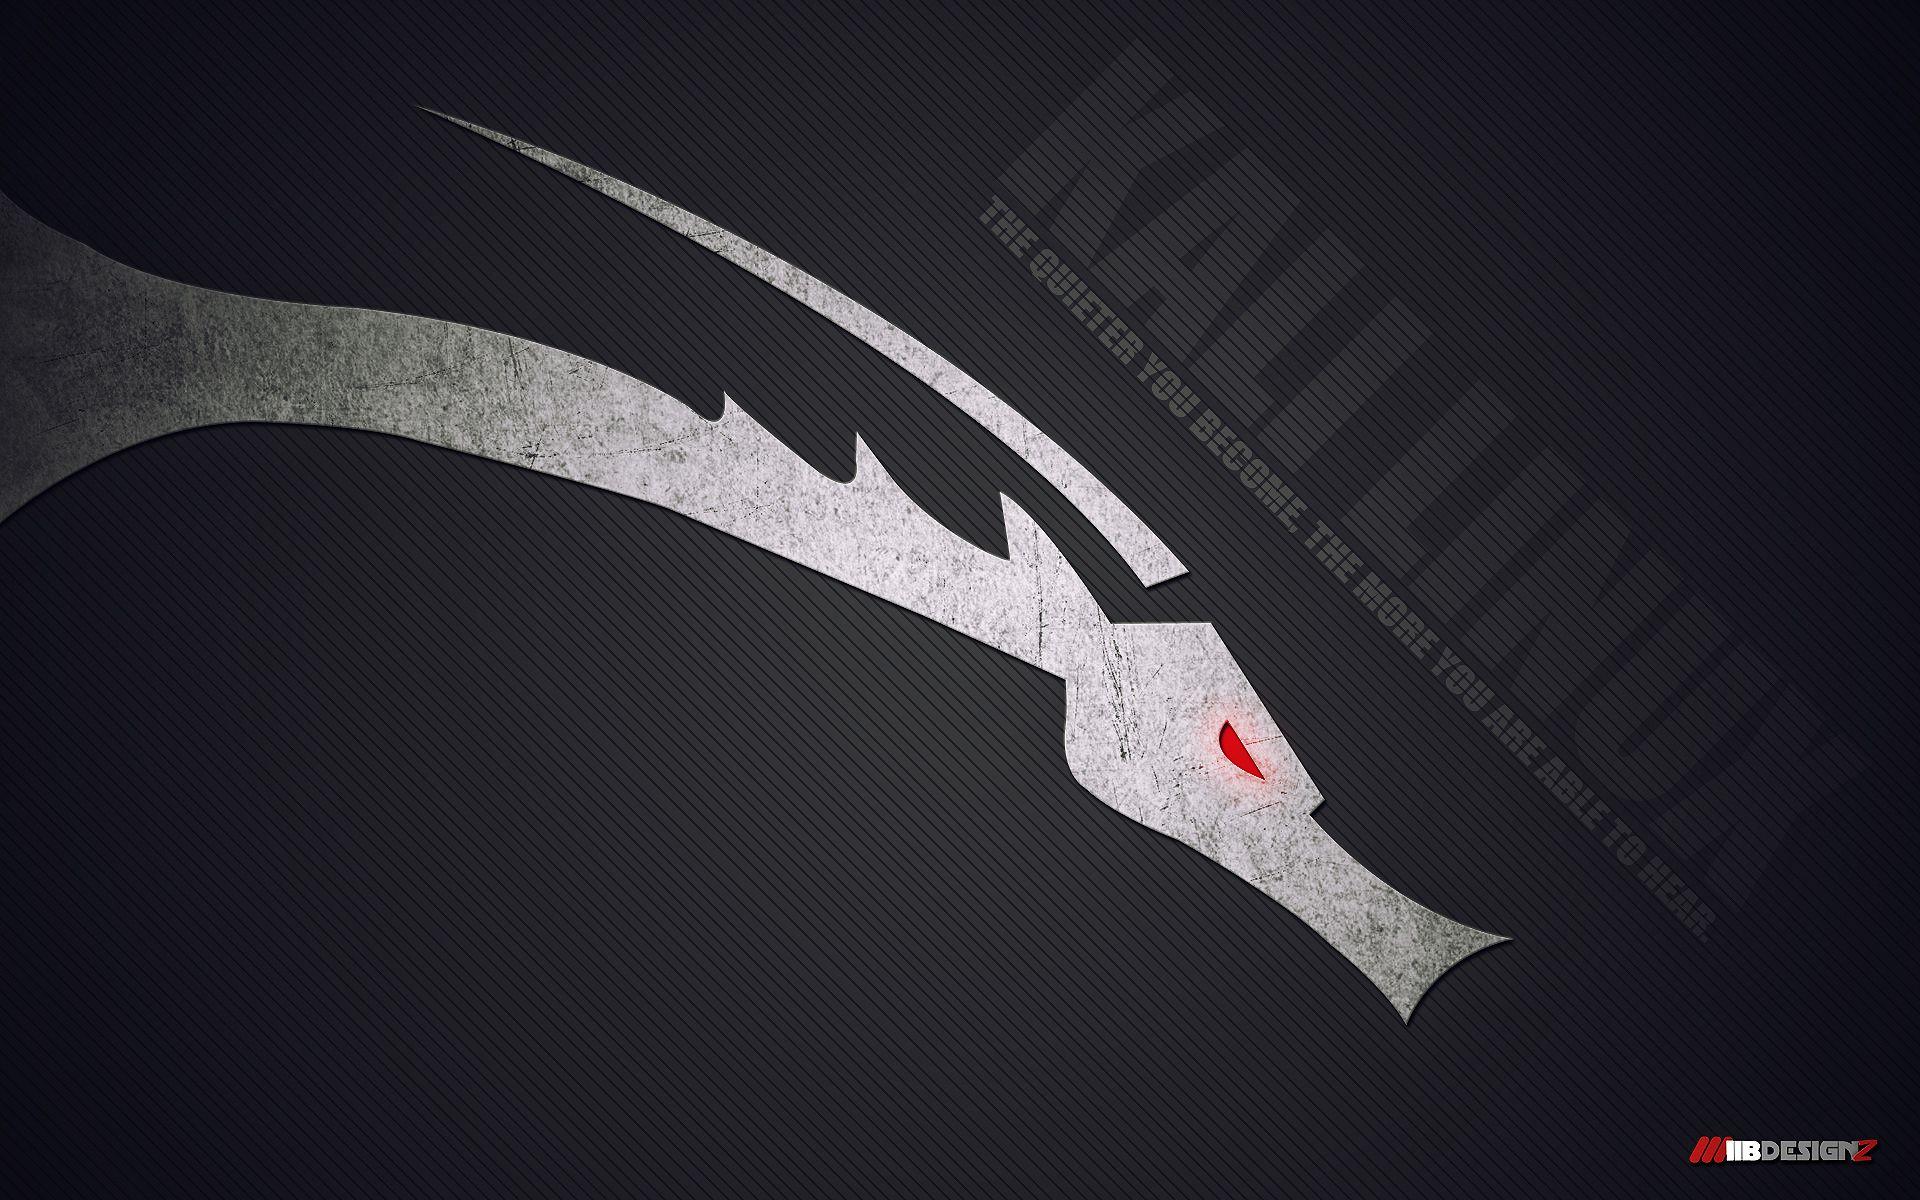 Kali Linux wallpaper. Kali Linux